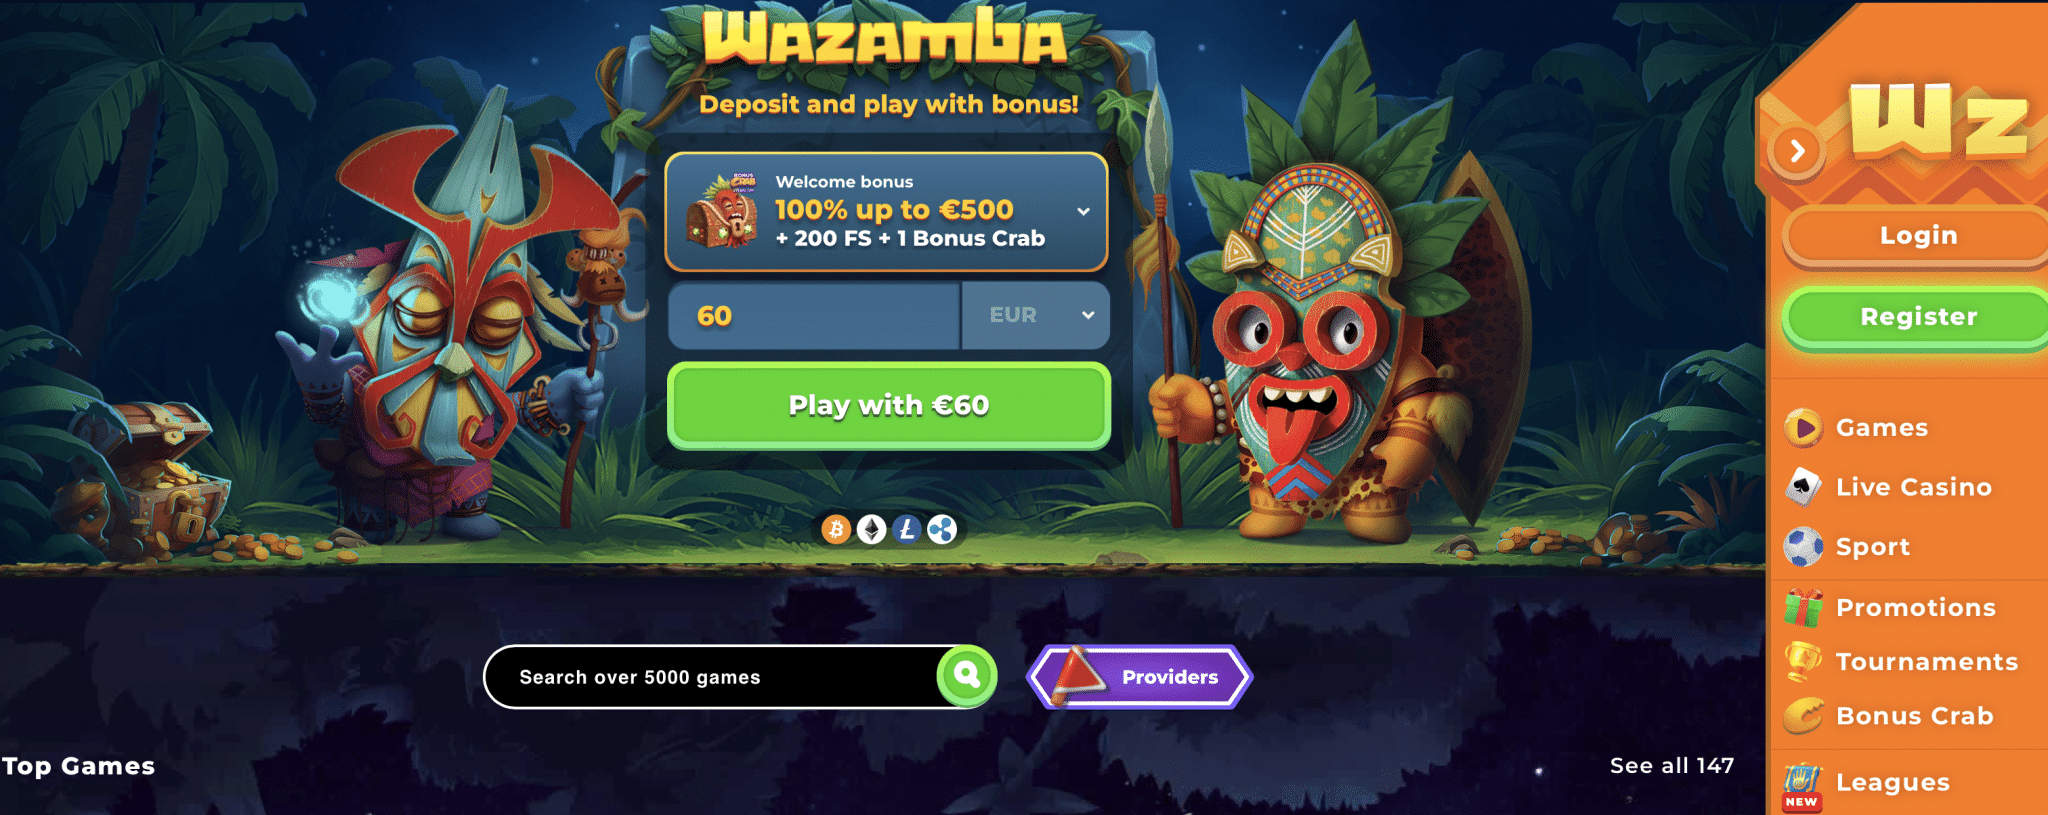 Wazamba casino första sidan vissar massa spel utan spelpaus